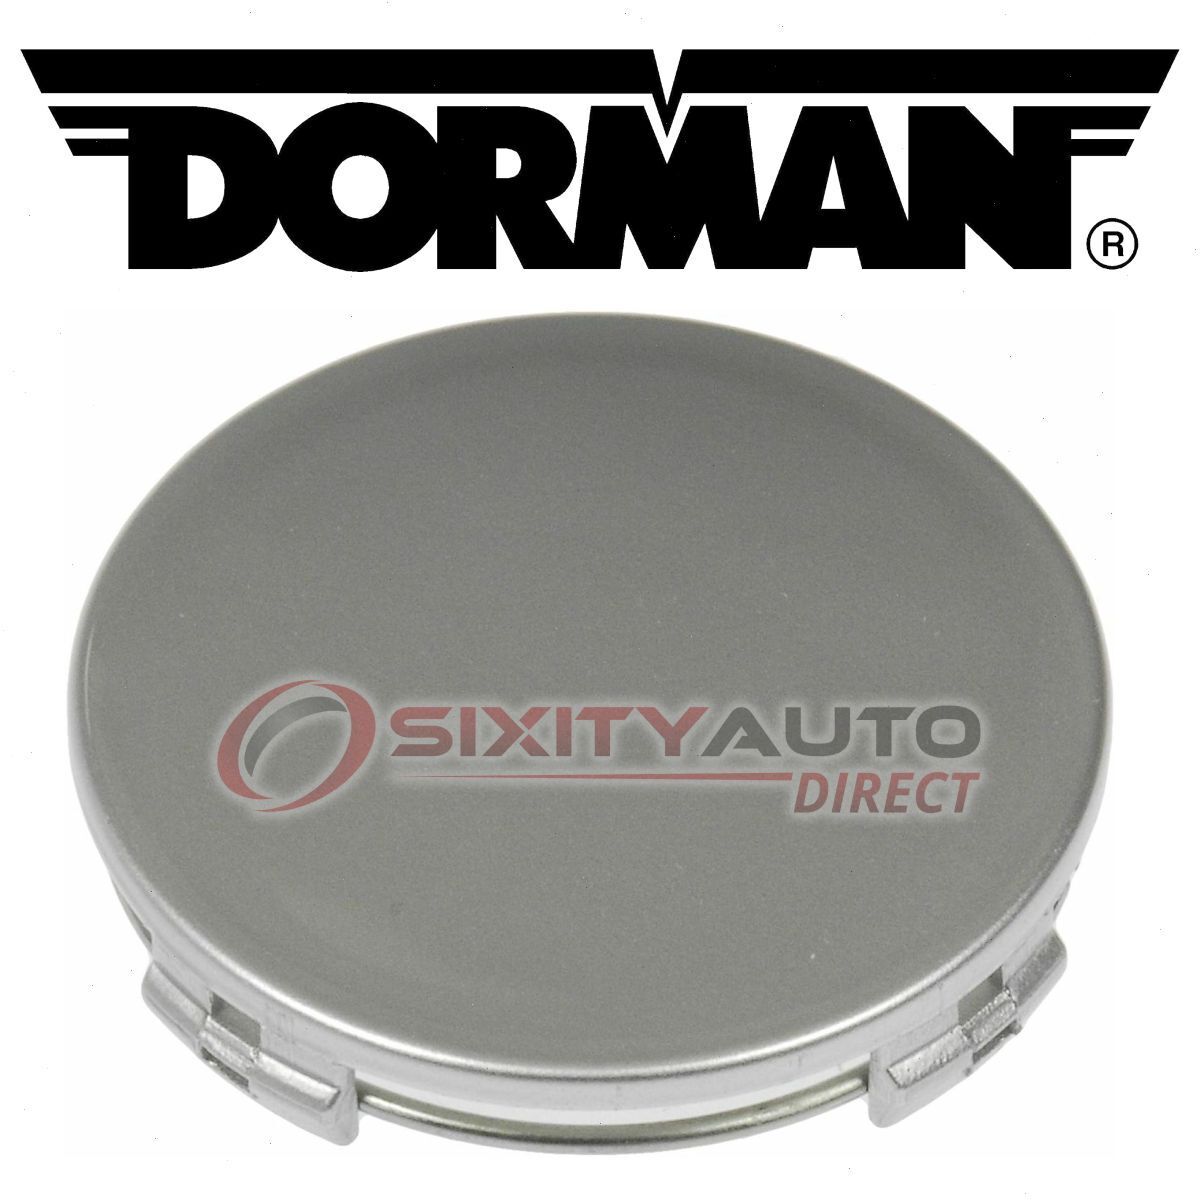 Dorman Wheel Cap for 2003 Mazda Protege5 Tire  ye